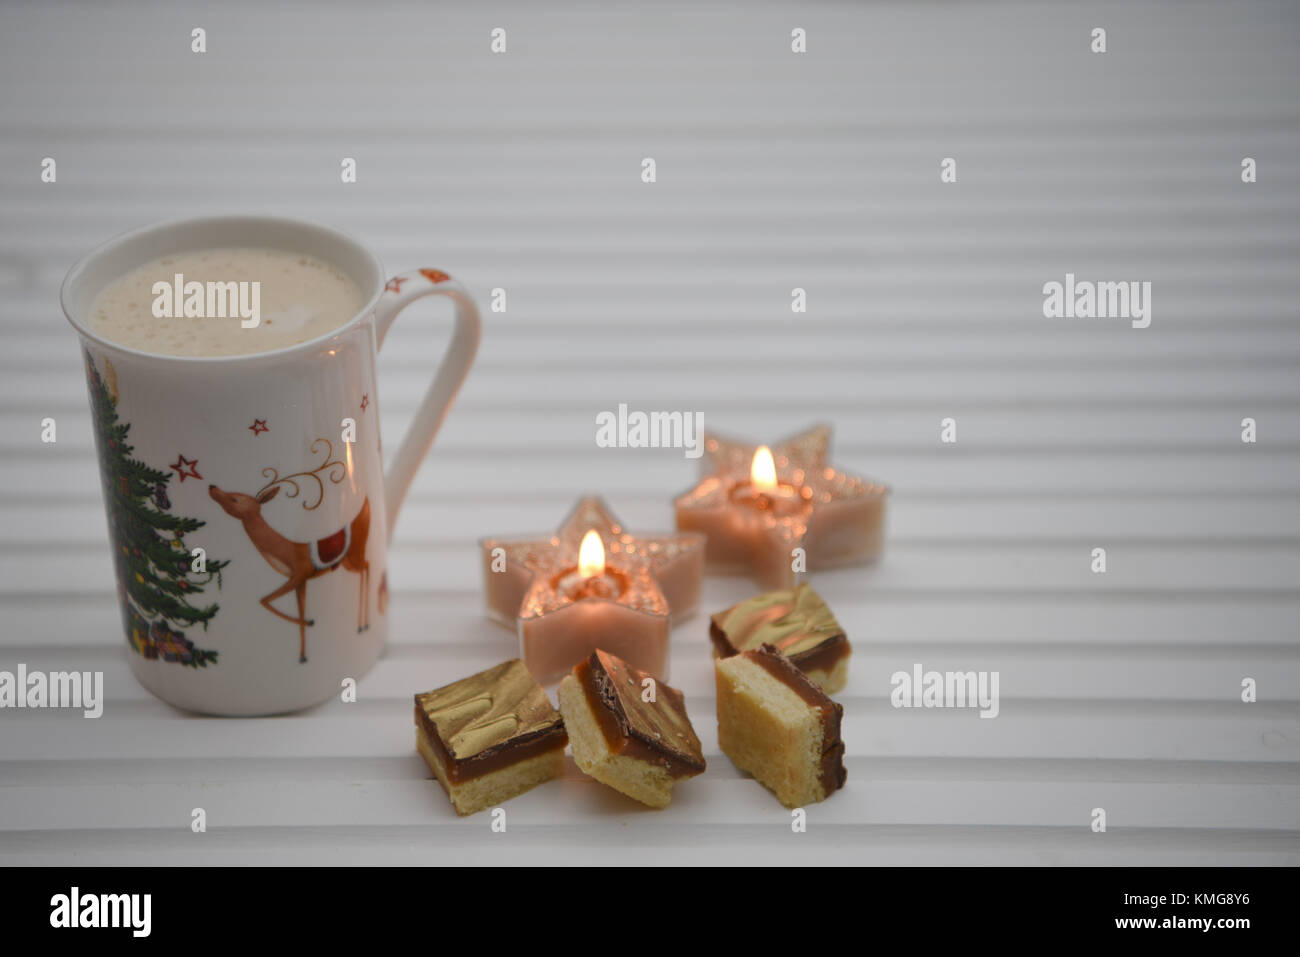 Natale immagine di fotografia con spumeggiante bevanda calda in renna boccale per stampa a caldo con candele e lusso alimentare al cioccolato bianco su uno sfondo di legno Foto Stock